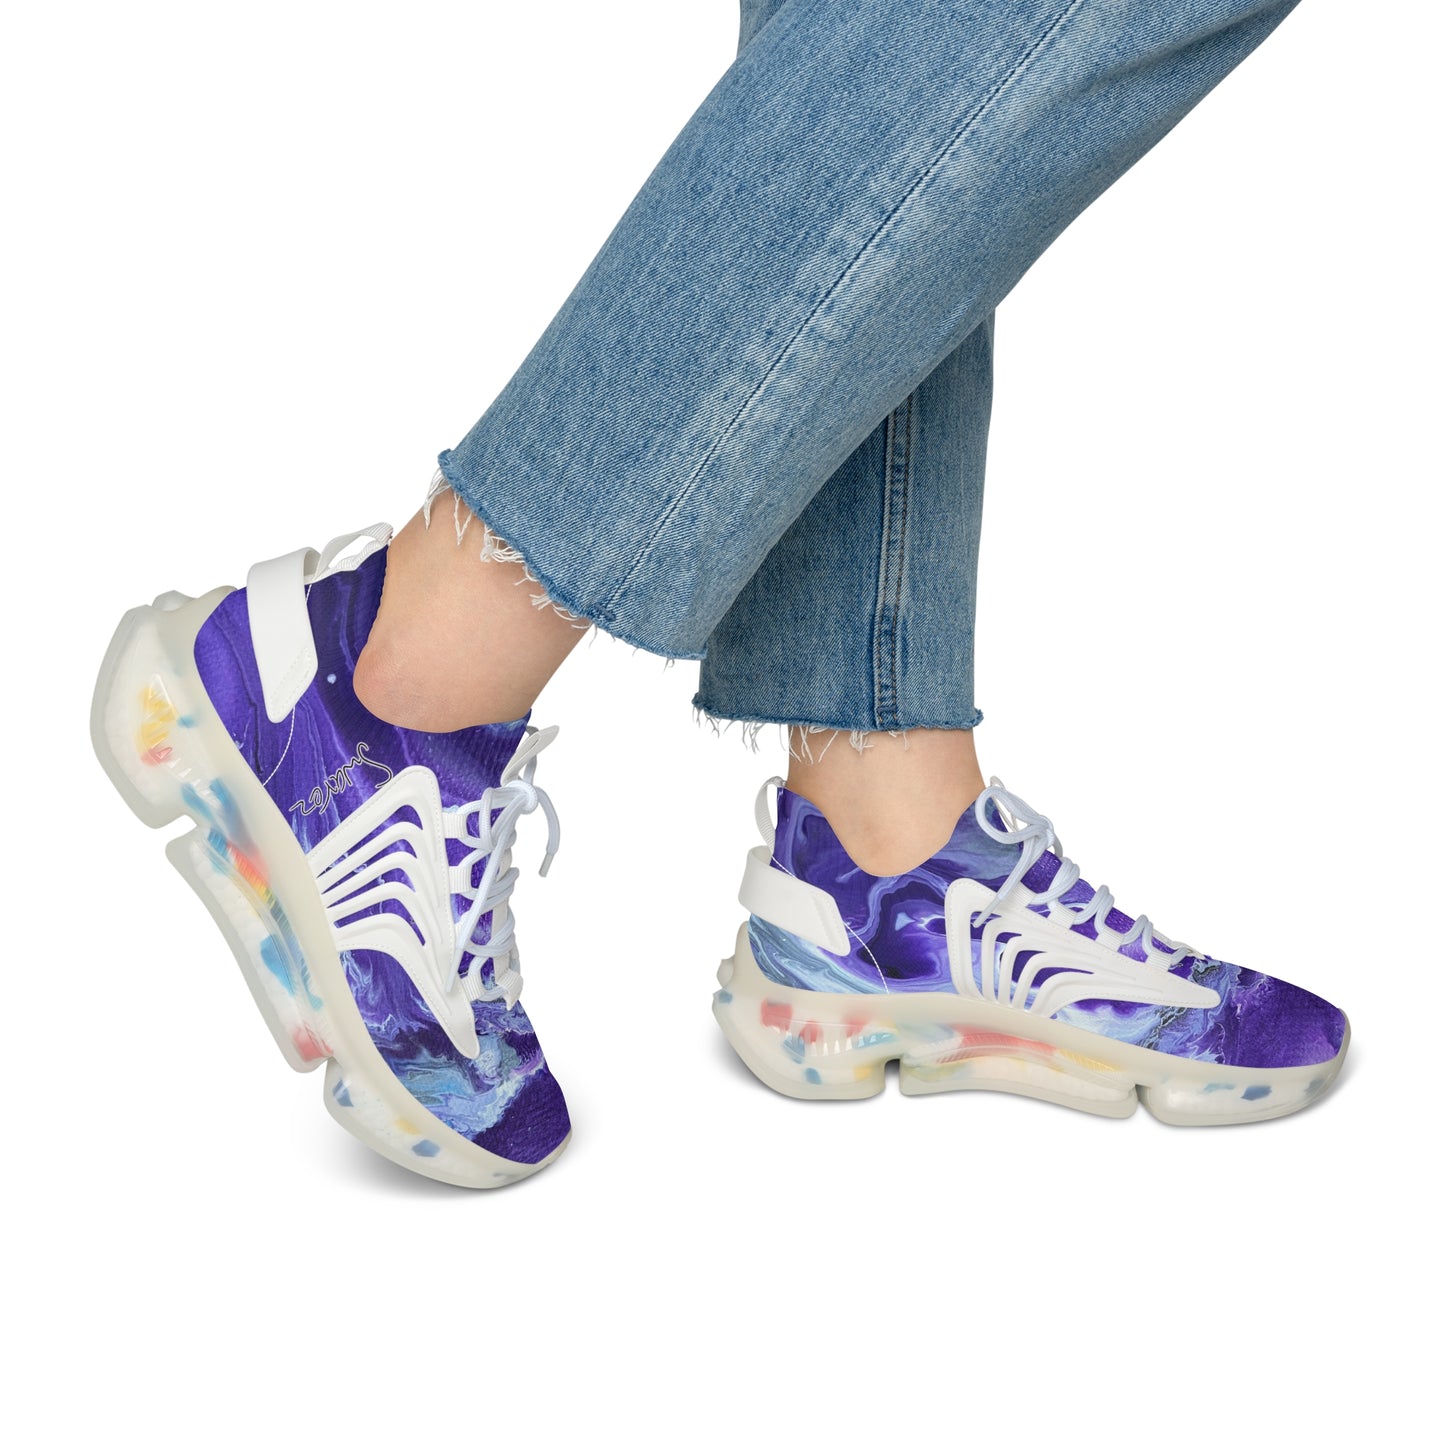 Women's Mesh Sneakers - Ady's purplez!